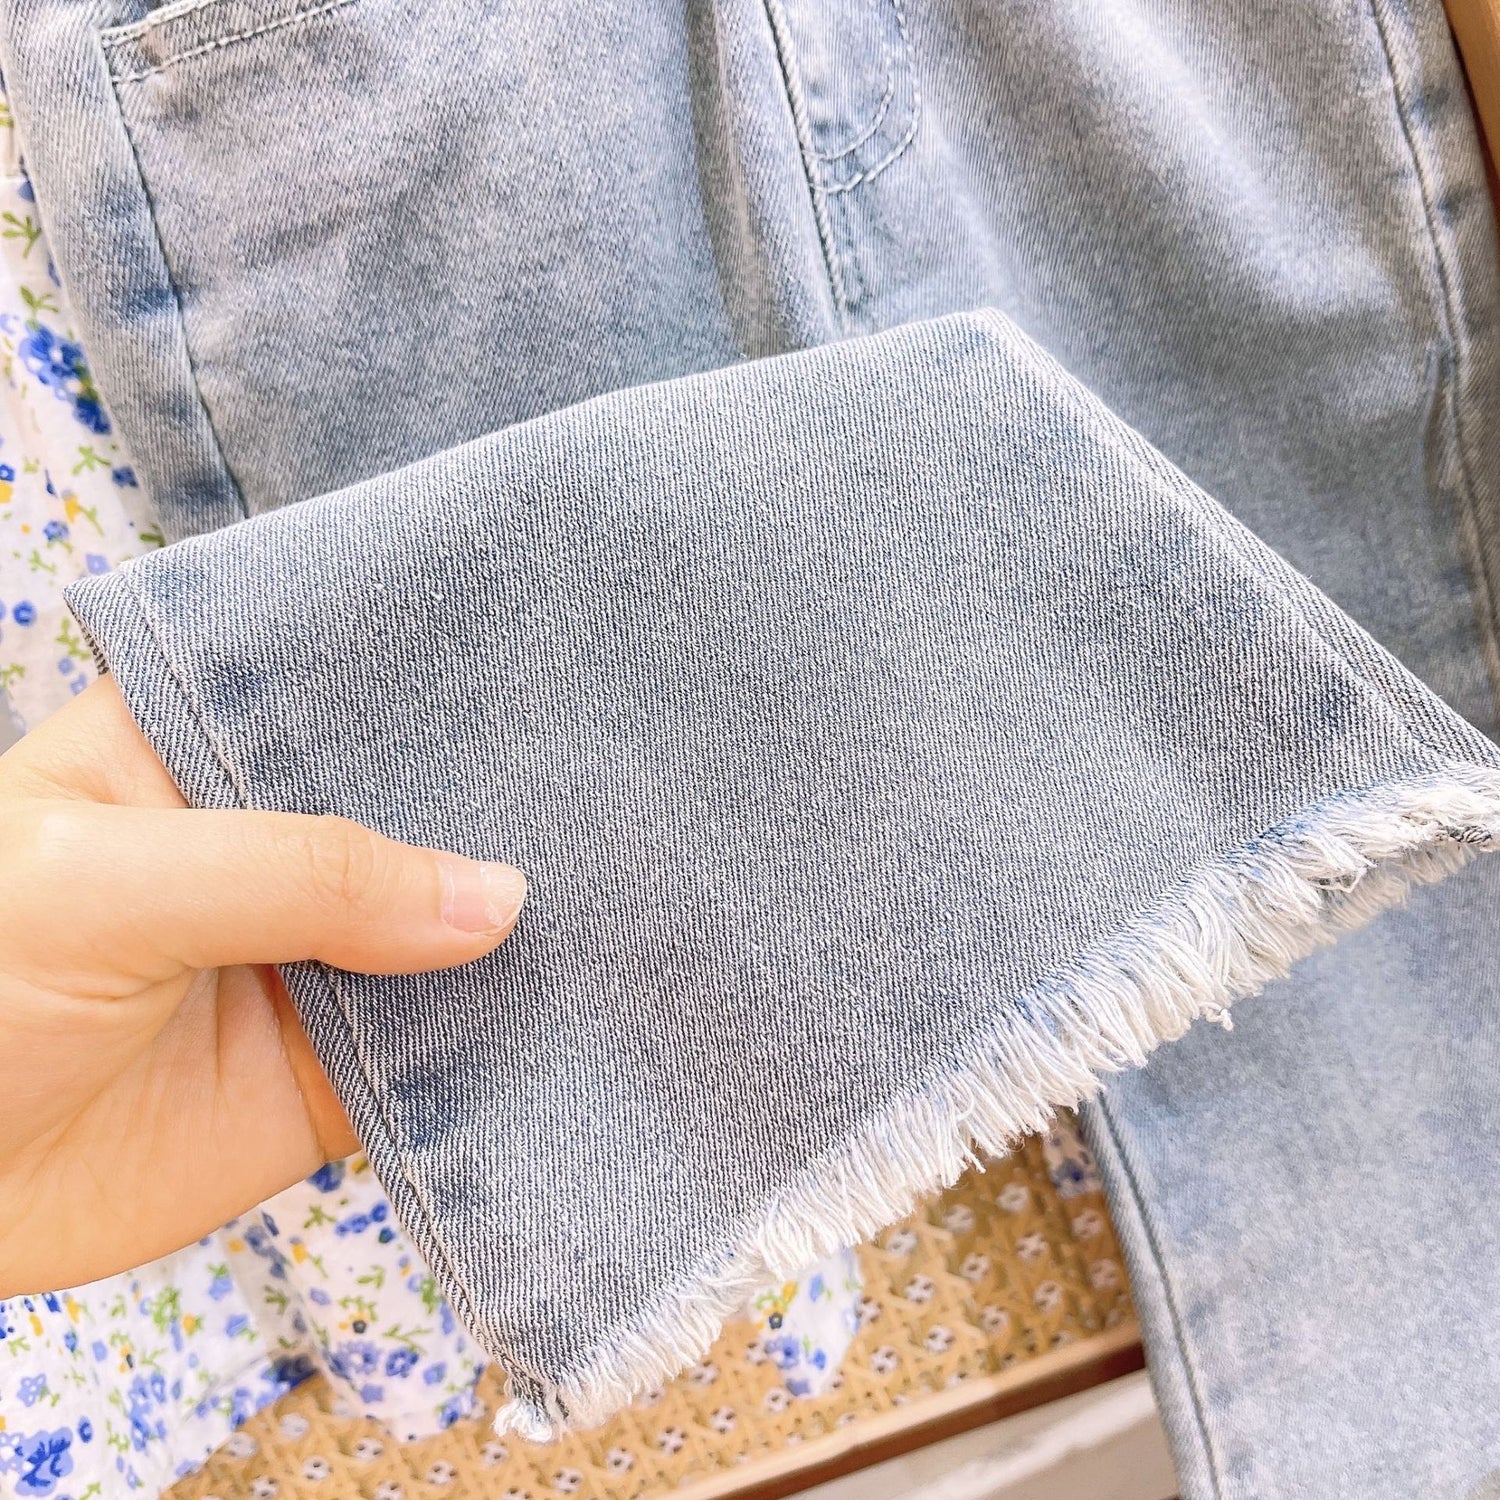 [363726] - Setelan Baju Blouse Lengan Panjang Celana Jeans Panjang Fashion Anak Perempuan Import - Motif Floral Denim